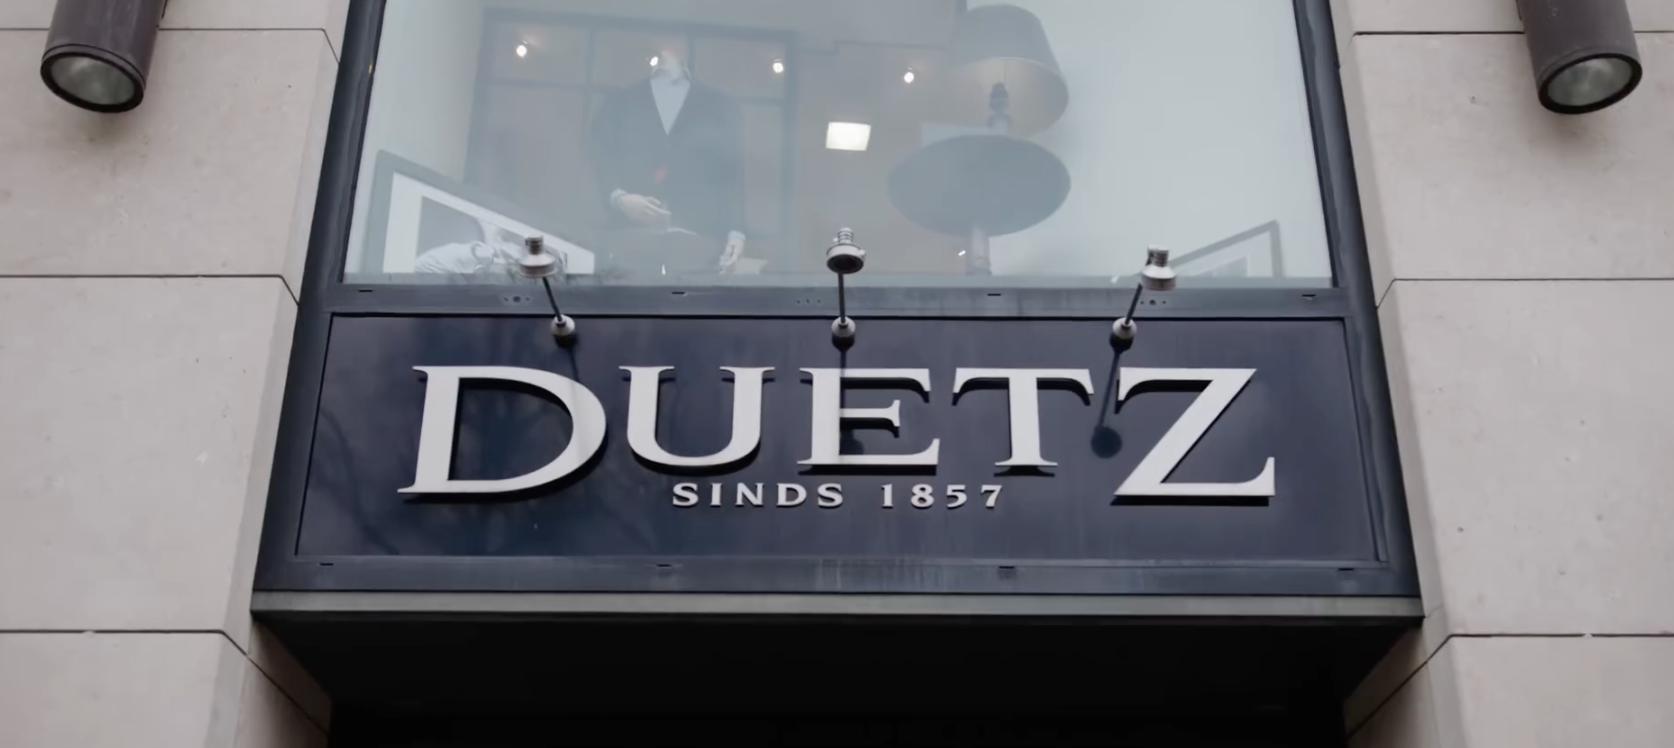 Duetz Mode met twintig winkels en twee webshops na 167 jaar failliet